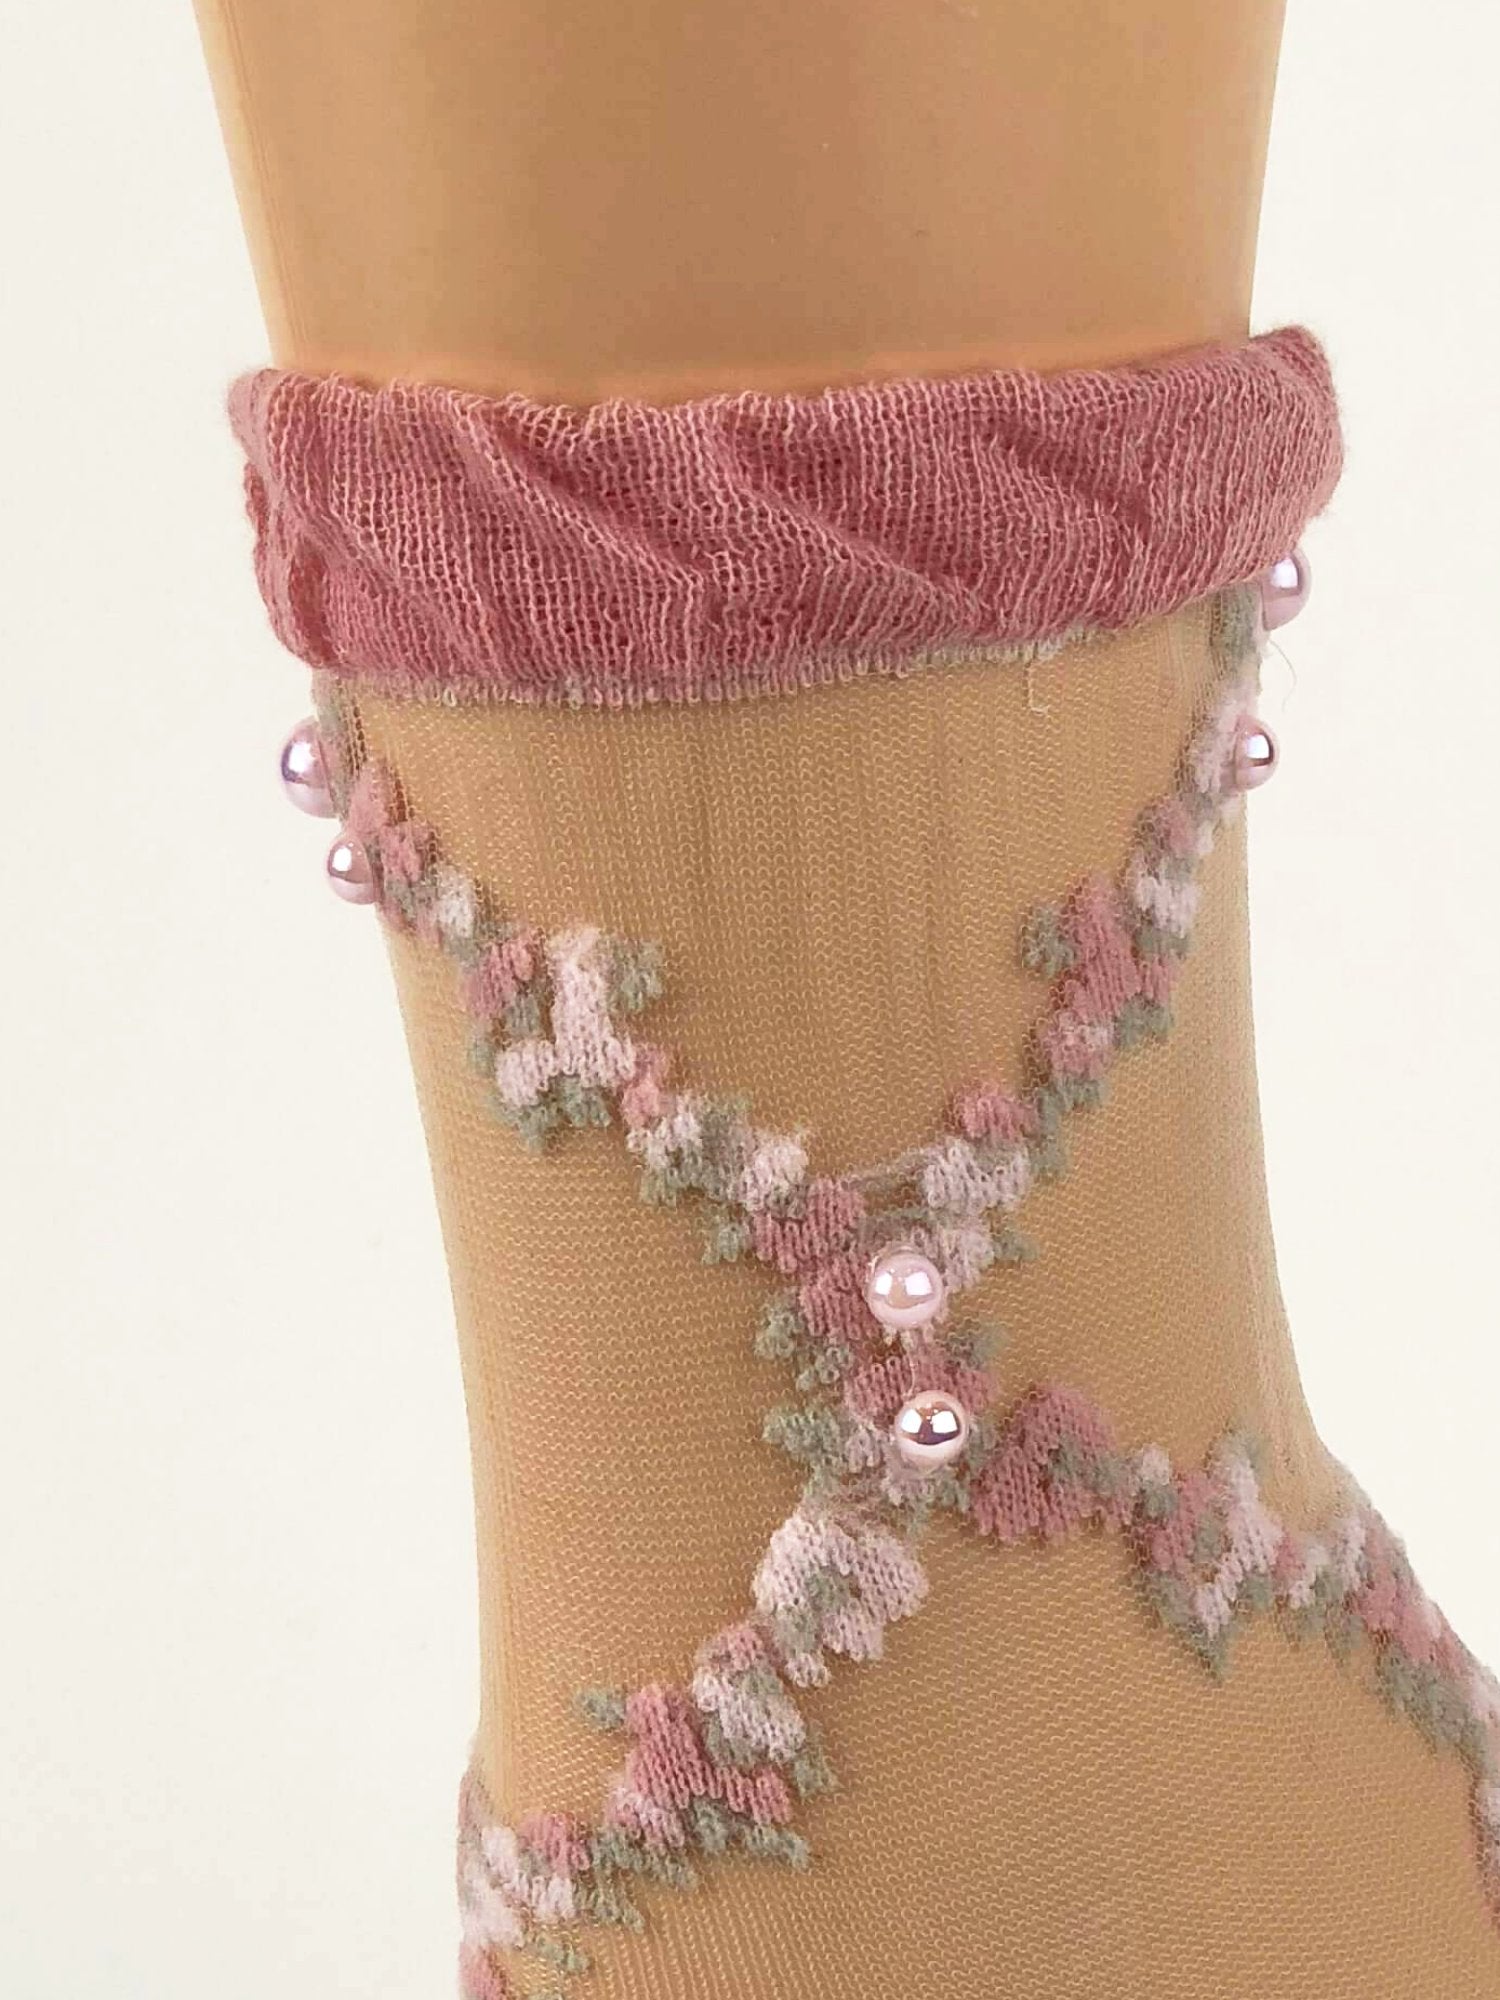 Pink/White Criss/Cross Patttern Sheer Socks - Global Trendz Fashion®